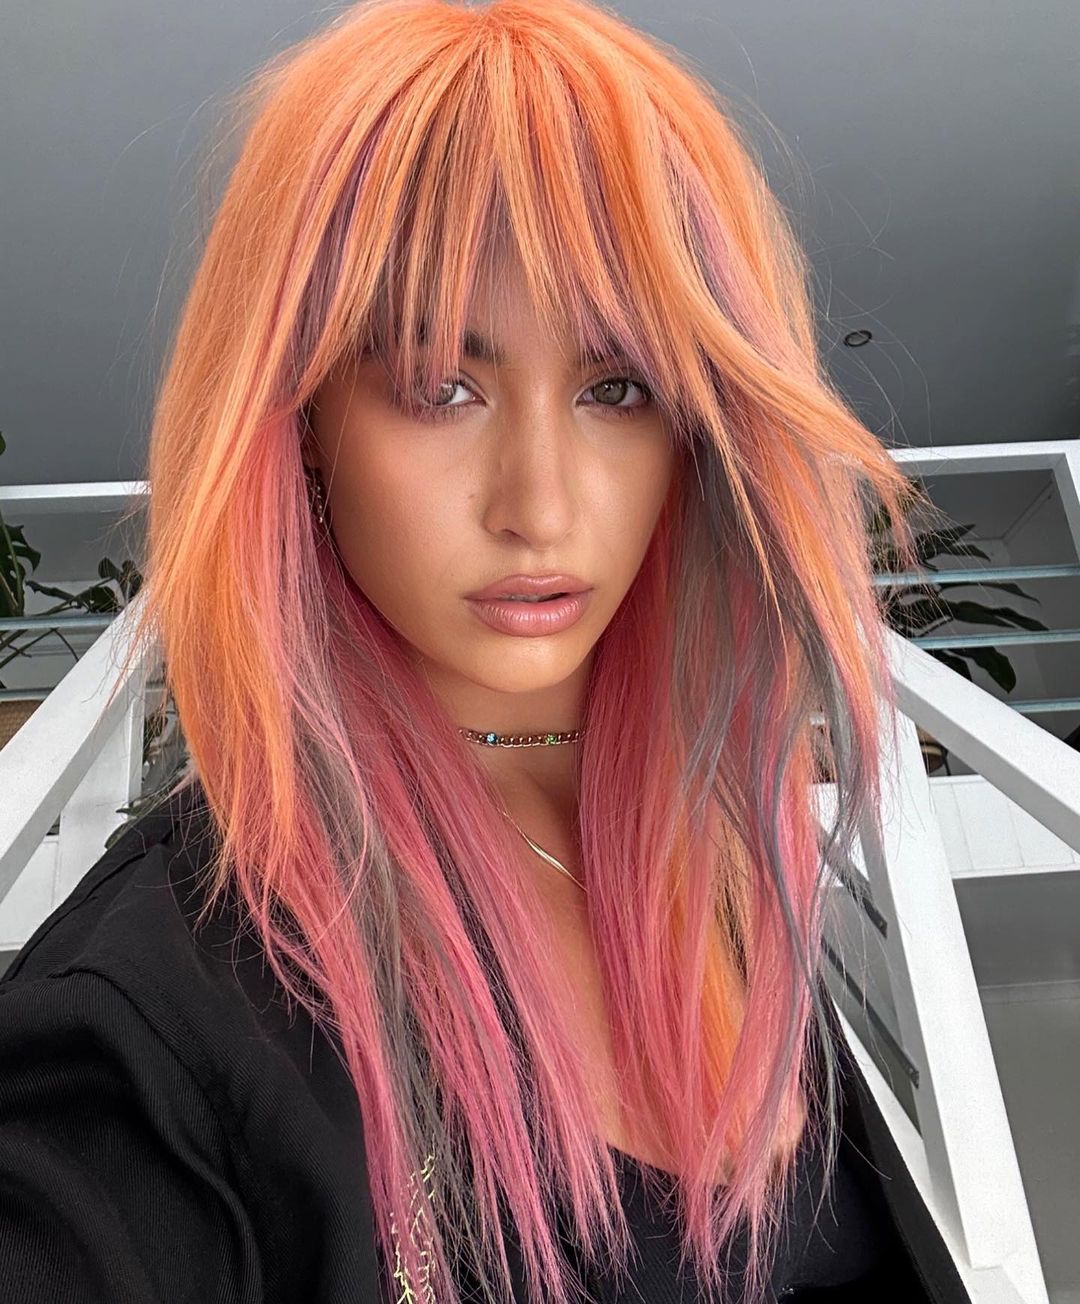 cabelo comprido cor-de-rosa pêssego com franja cortinada